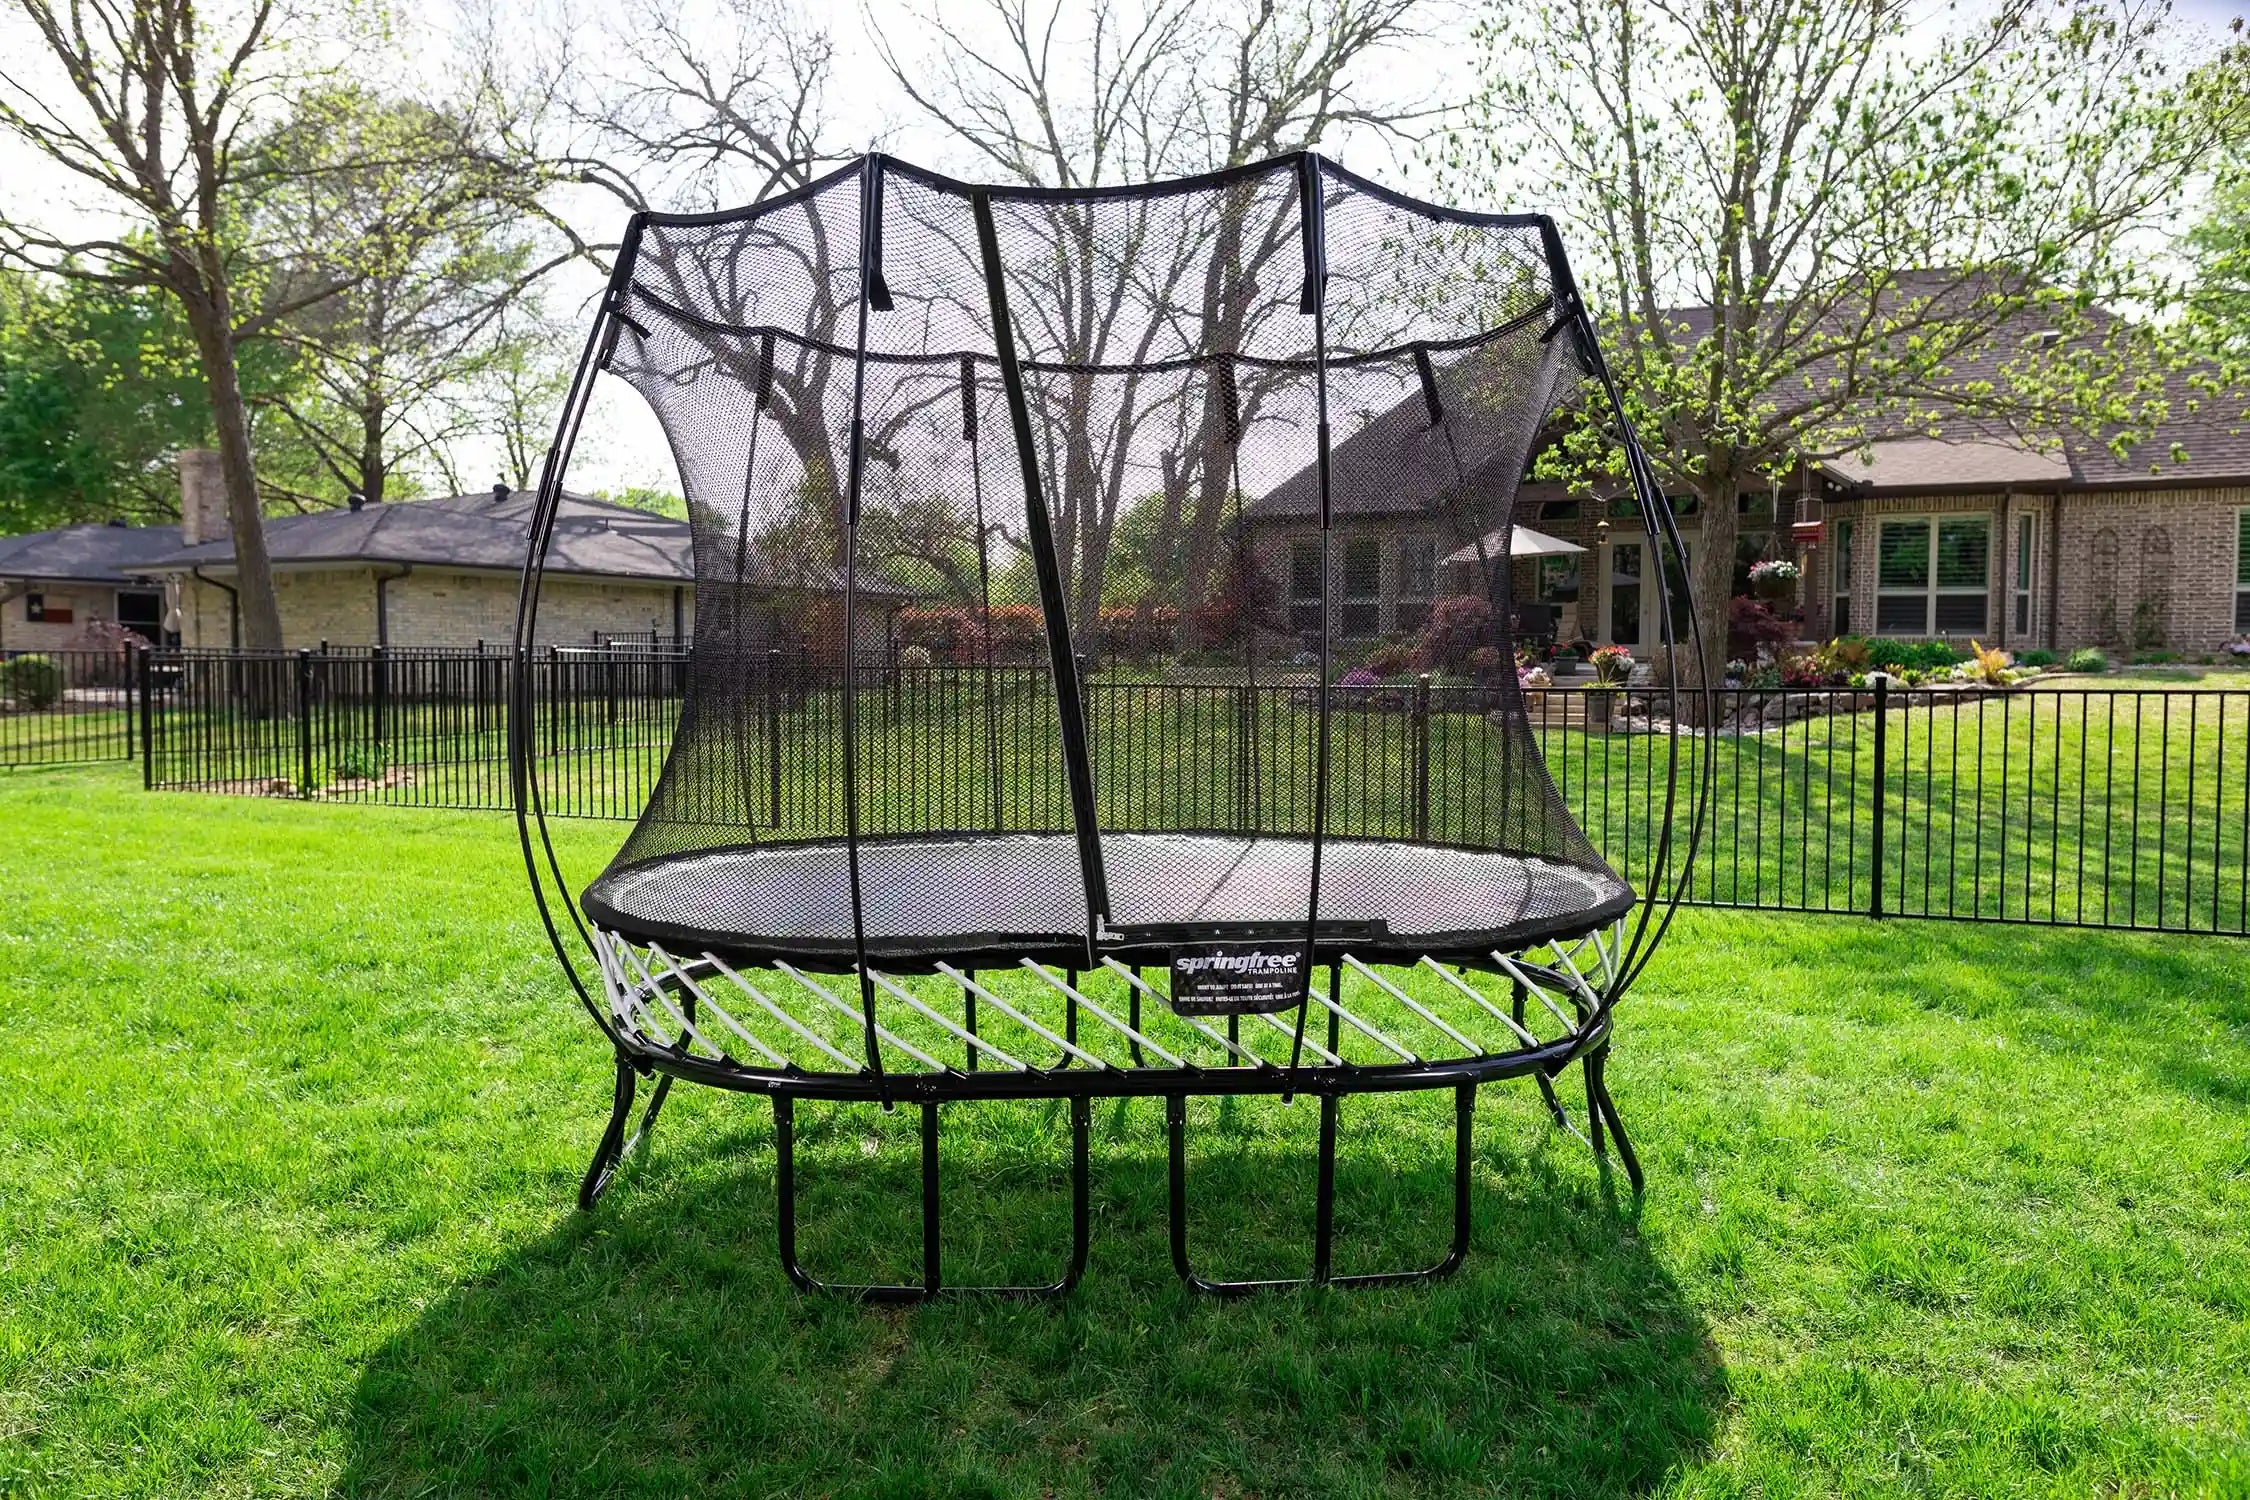 outdoor trampoline